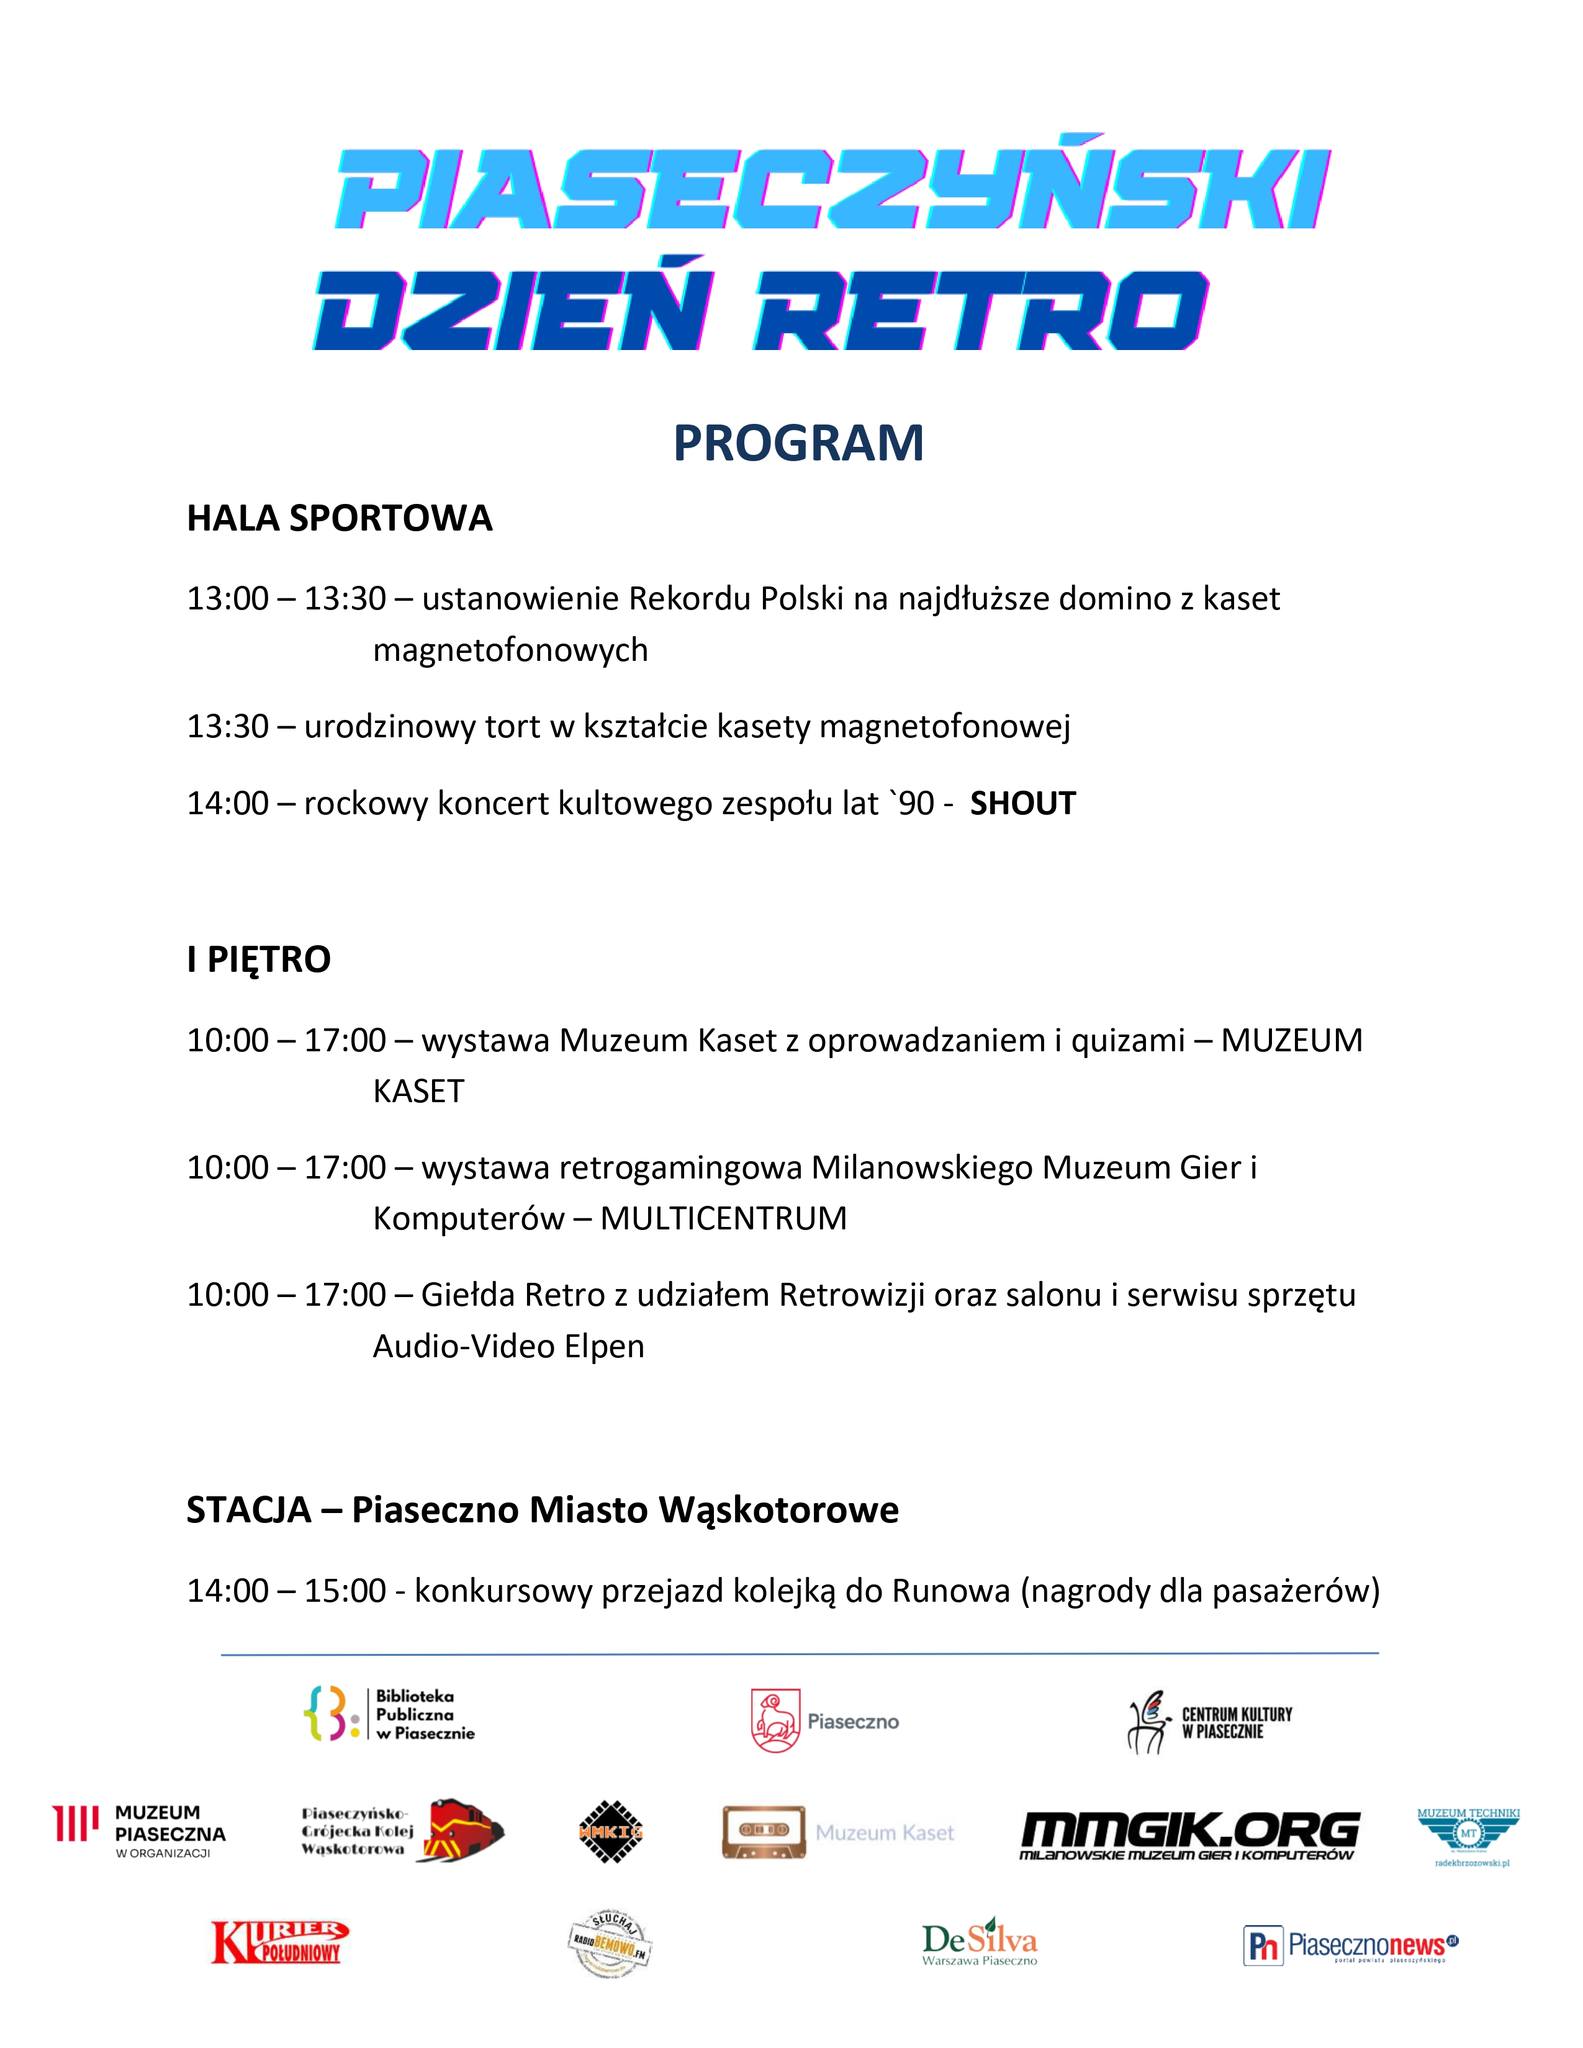 Program Piaseczyński Dzień Retro